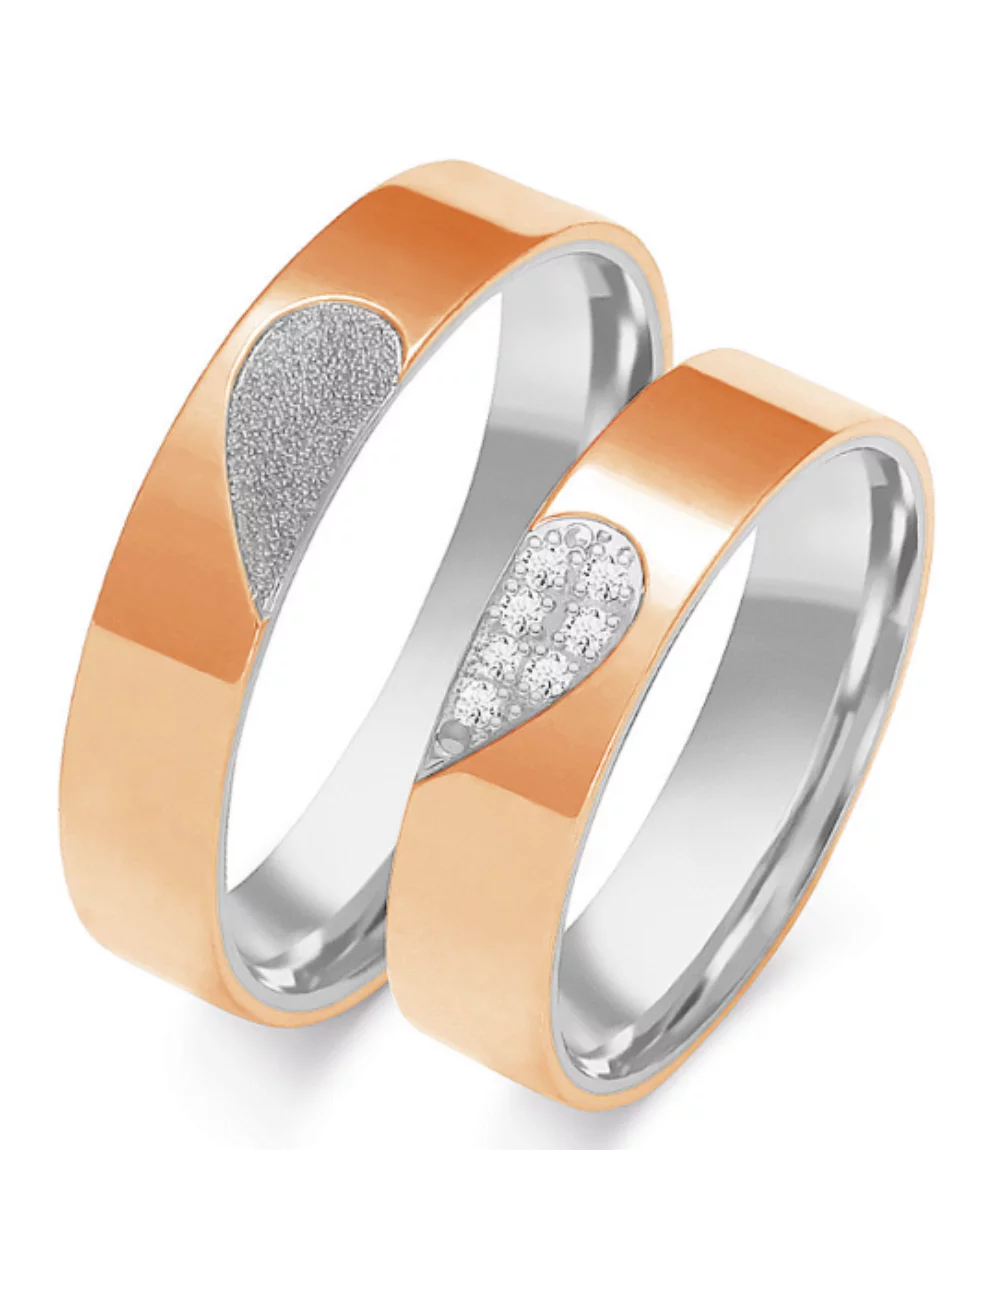 Vestuviniai žiedai - Meilės širdelės (5 mm)